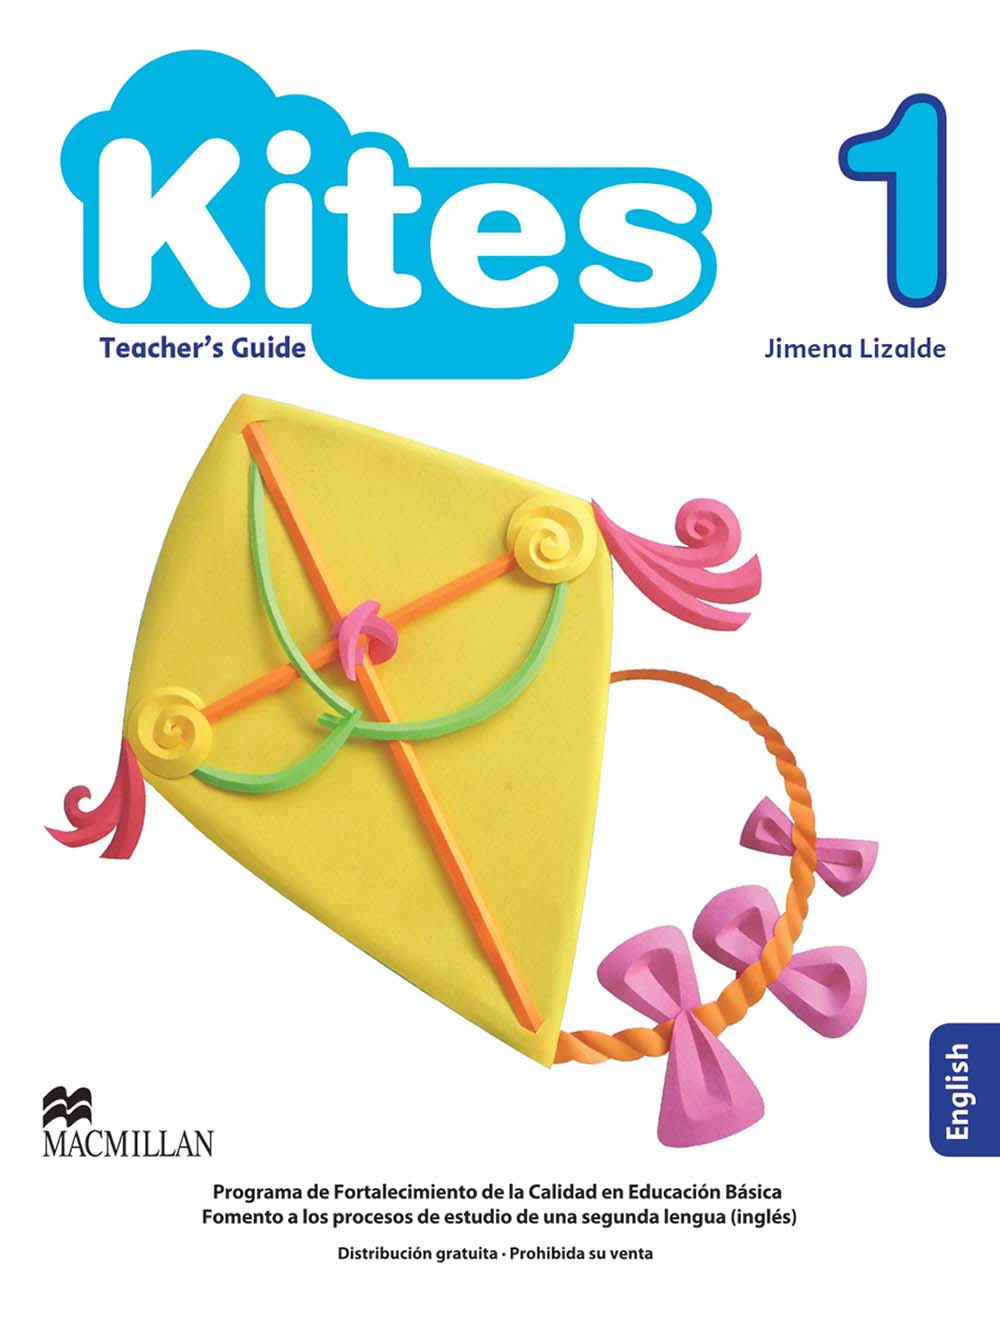 Kites 1. 1st Grade Primary Guía Didáctica, Editorial: Macmillan Publishers, Nivel: Primaria, Grado: 1